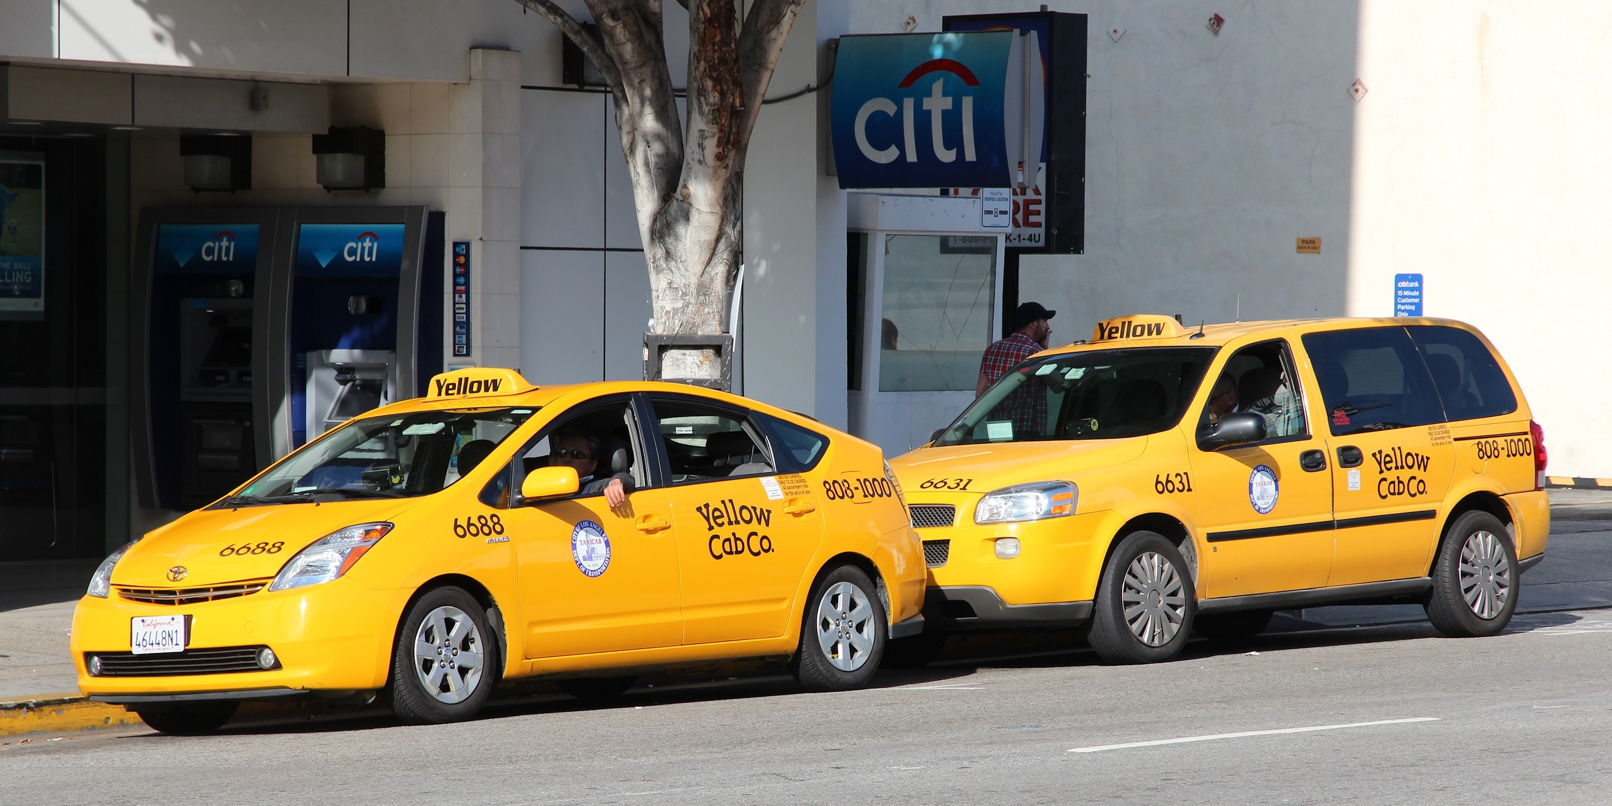 California da luz verde a los taxis sin conductor